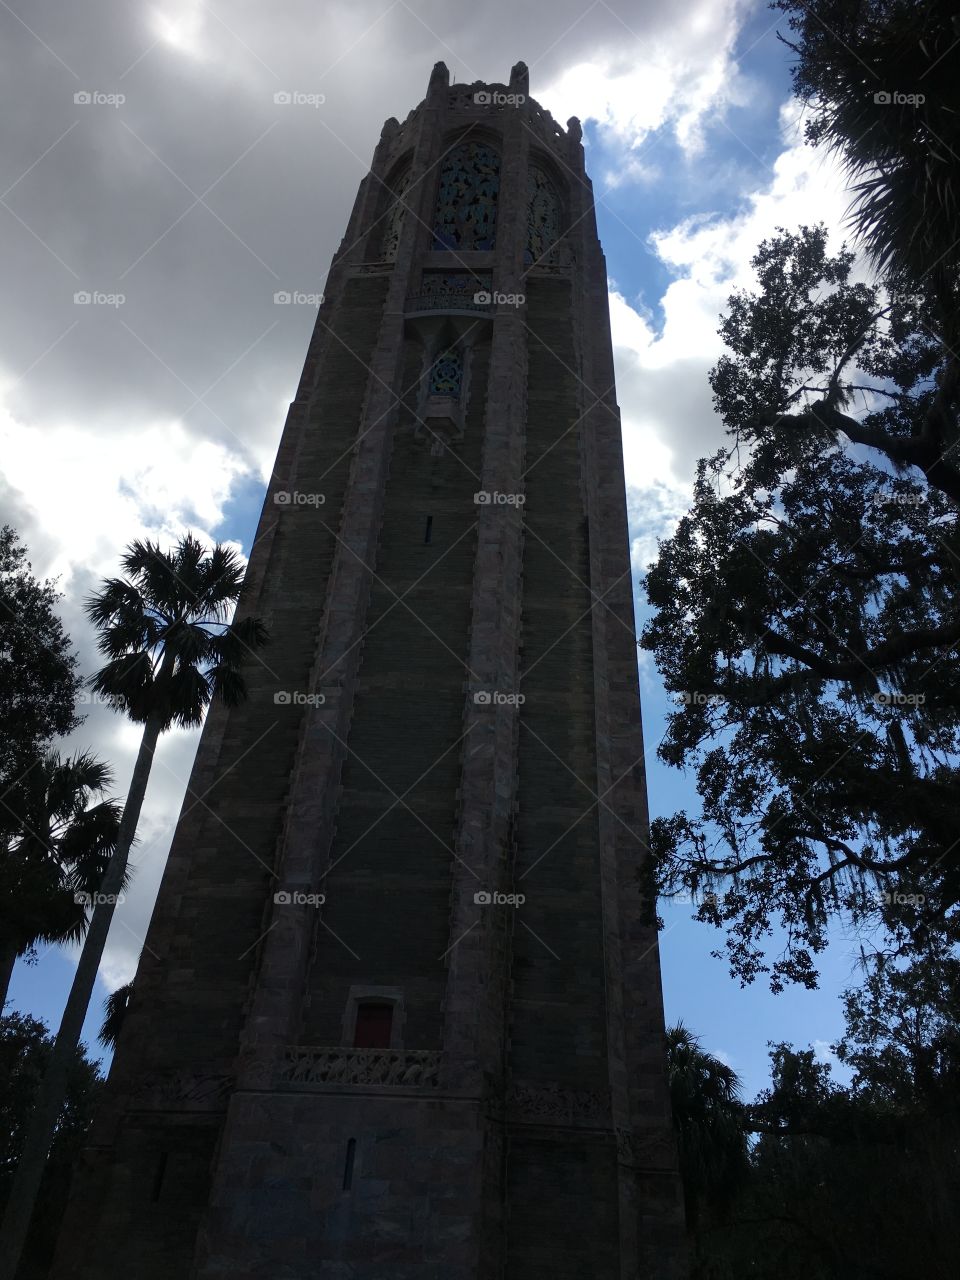 Bok Tower Central Florida